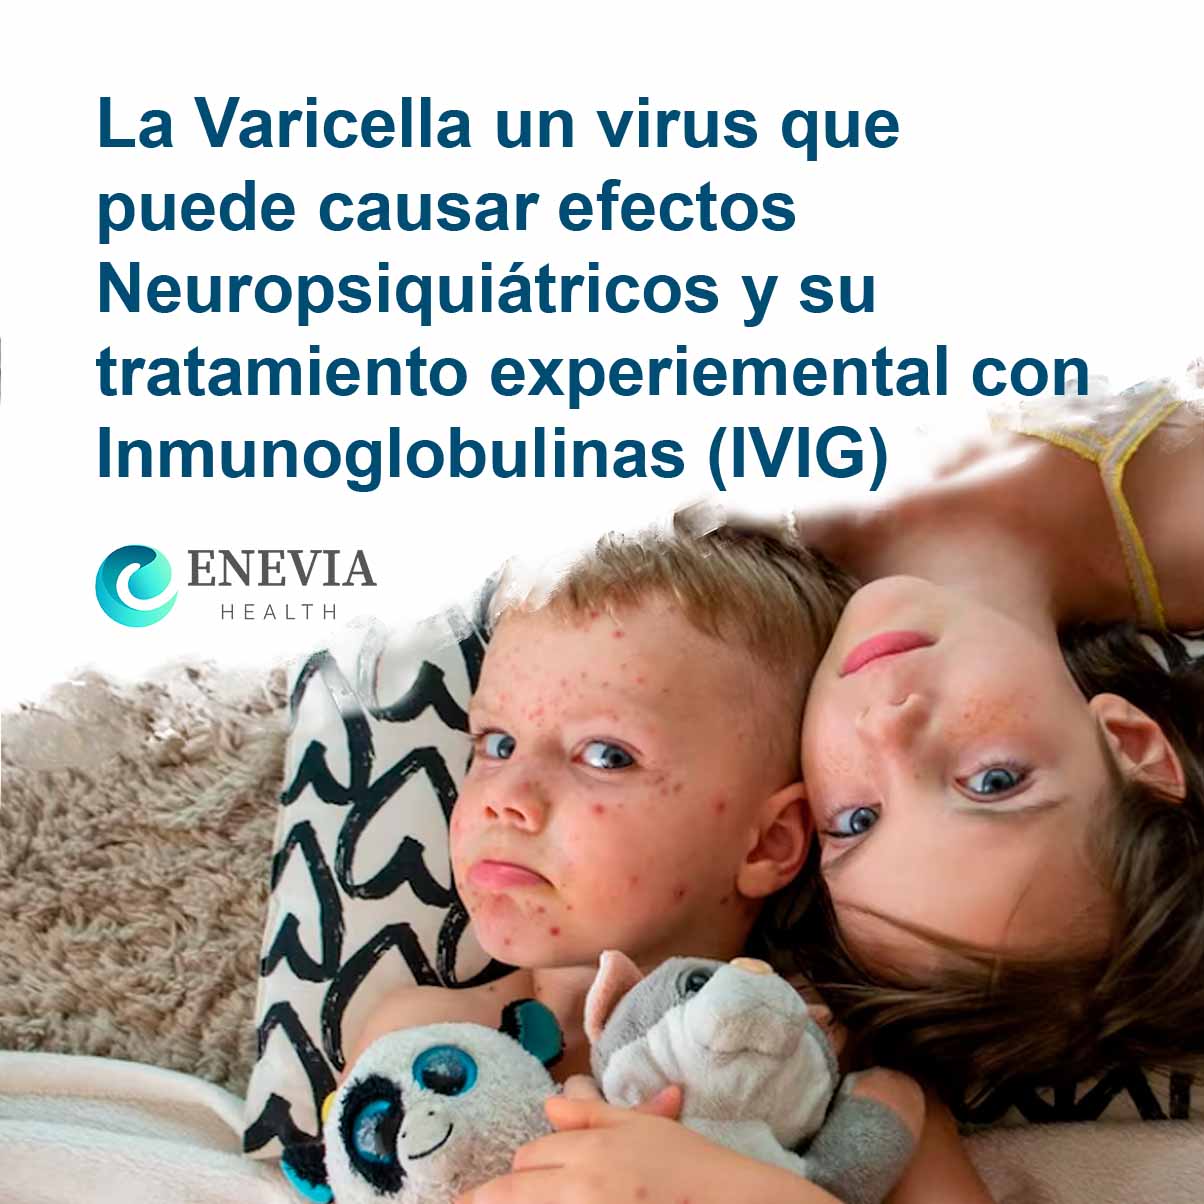 La Varicella un virus que puede causar efectos Neuropsiquiátricos y su tratamiento experiemental con Inmunoglobulinas (IVIG)